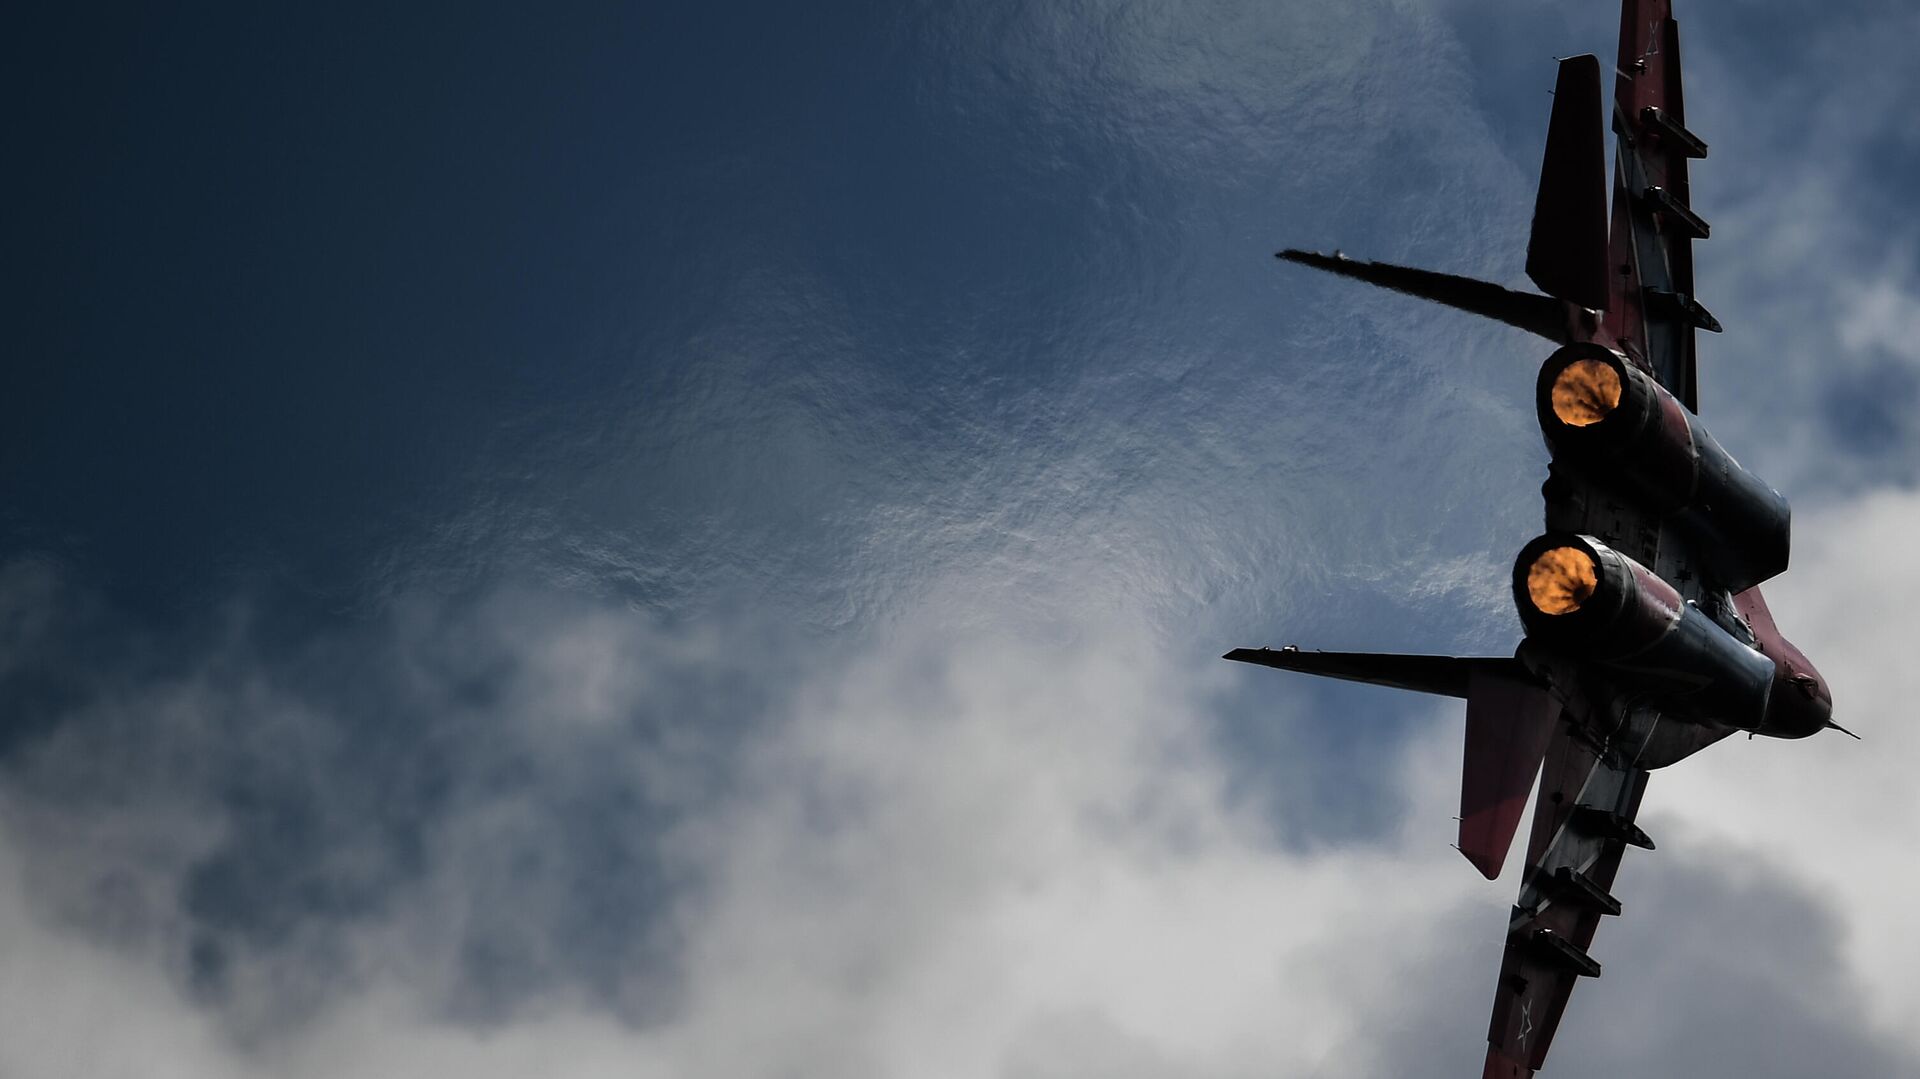 Истребитель МиГ-29 пилотажной группы Стрижи выполняет демонстрационный полет в рамках Международного форума Армия-2020 на аэродроме Кубинка в Подмосковье - РИА Новости, 1920, 07.09.2020